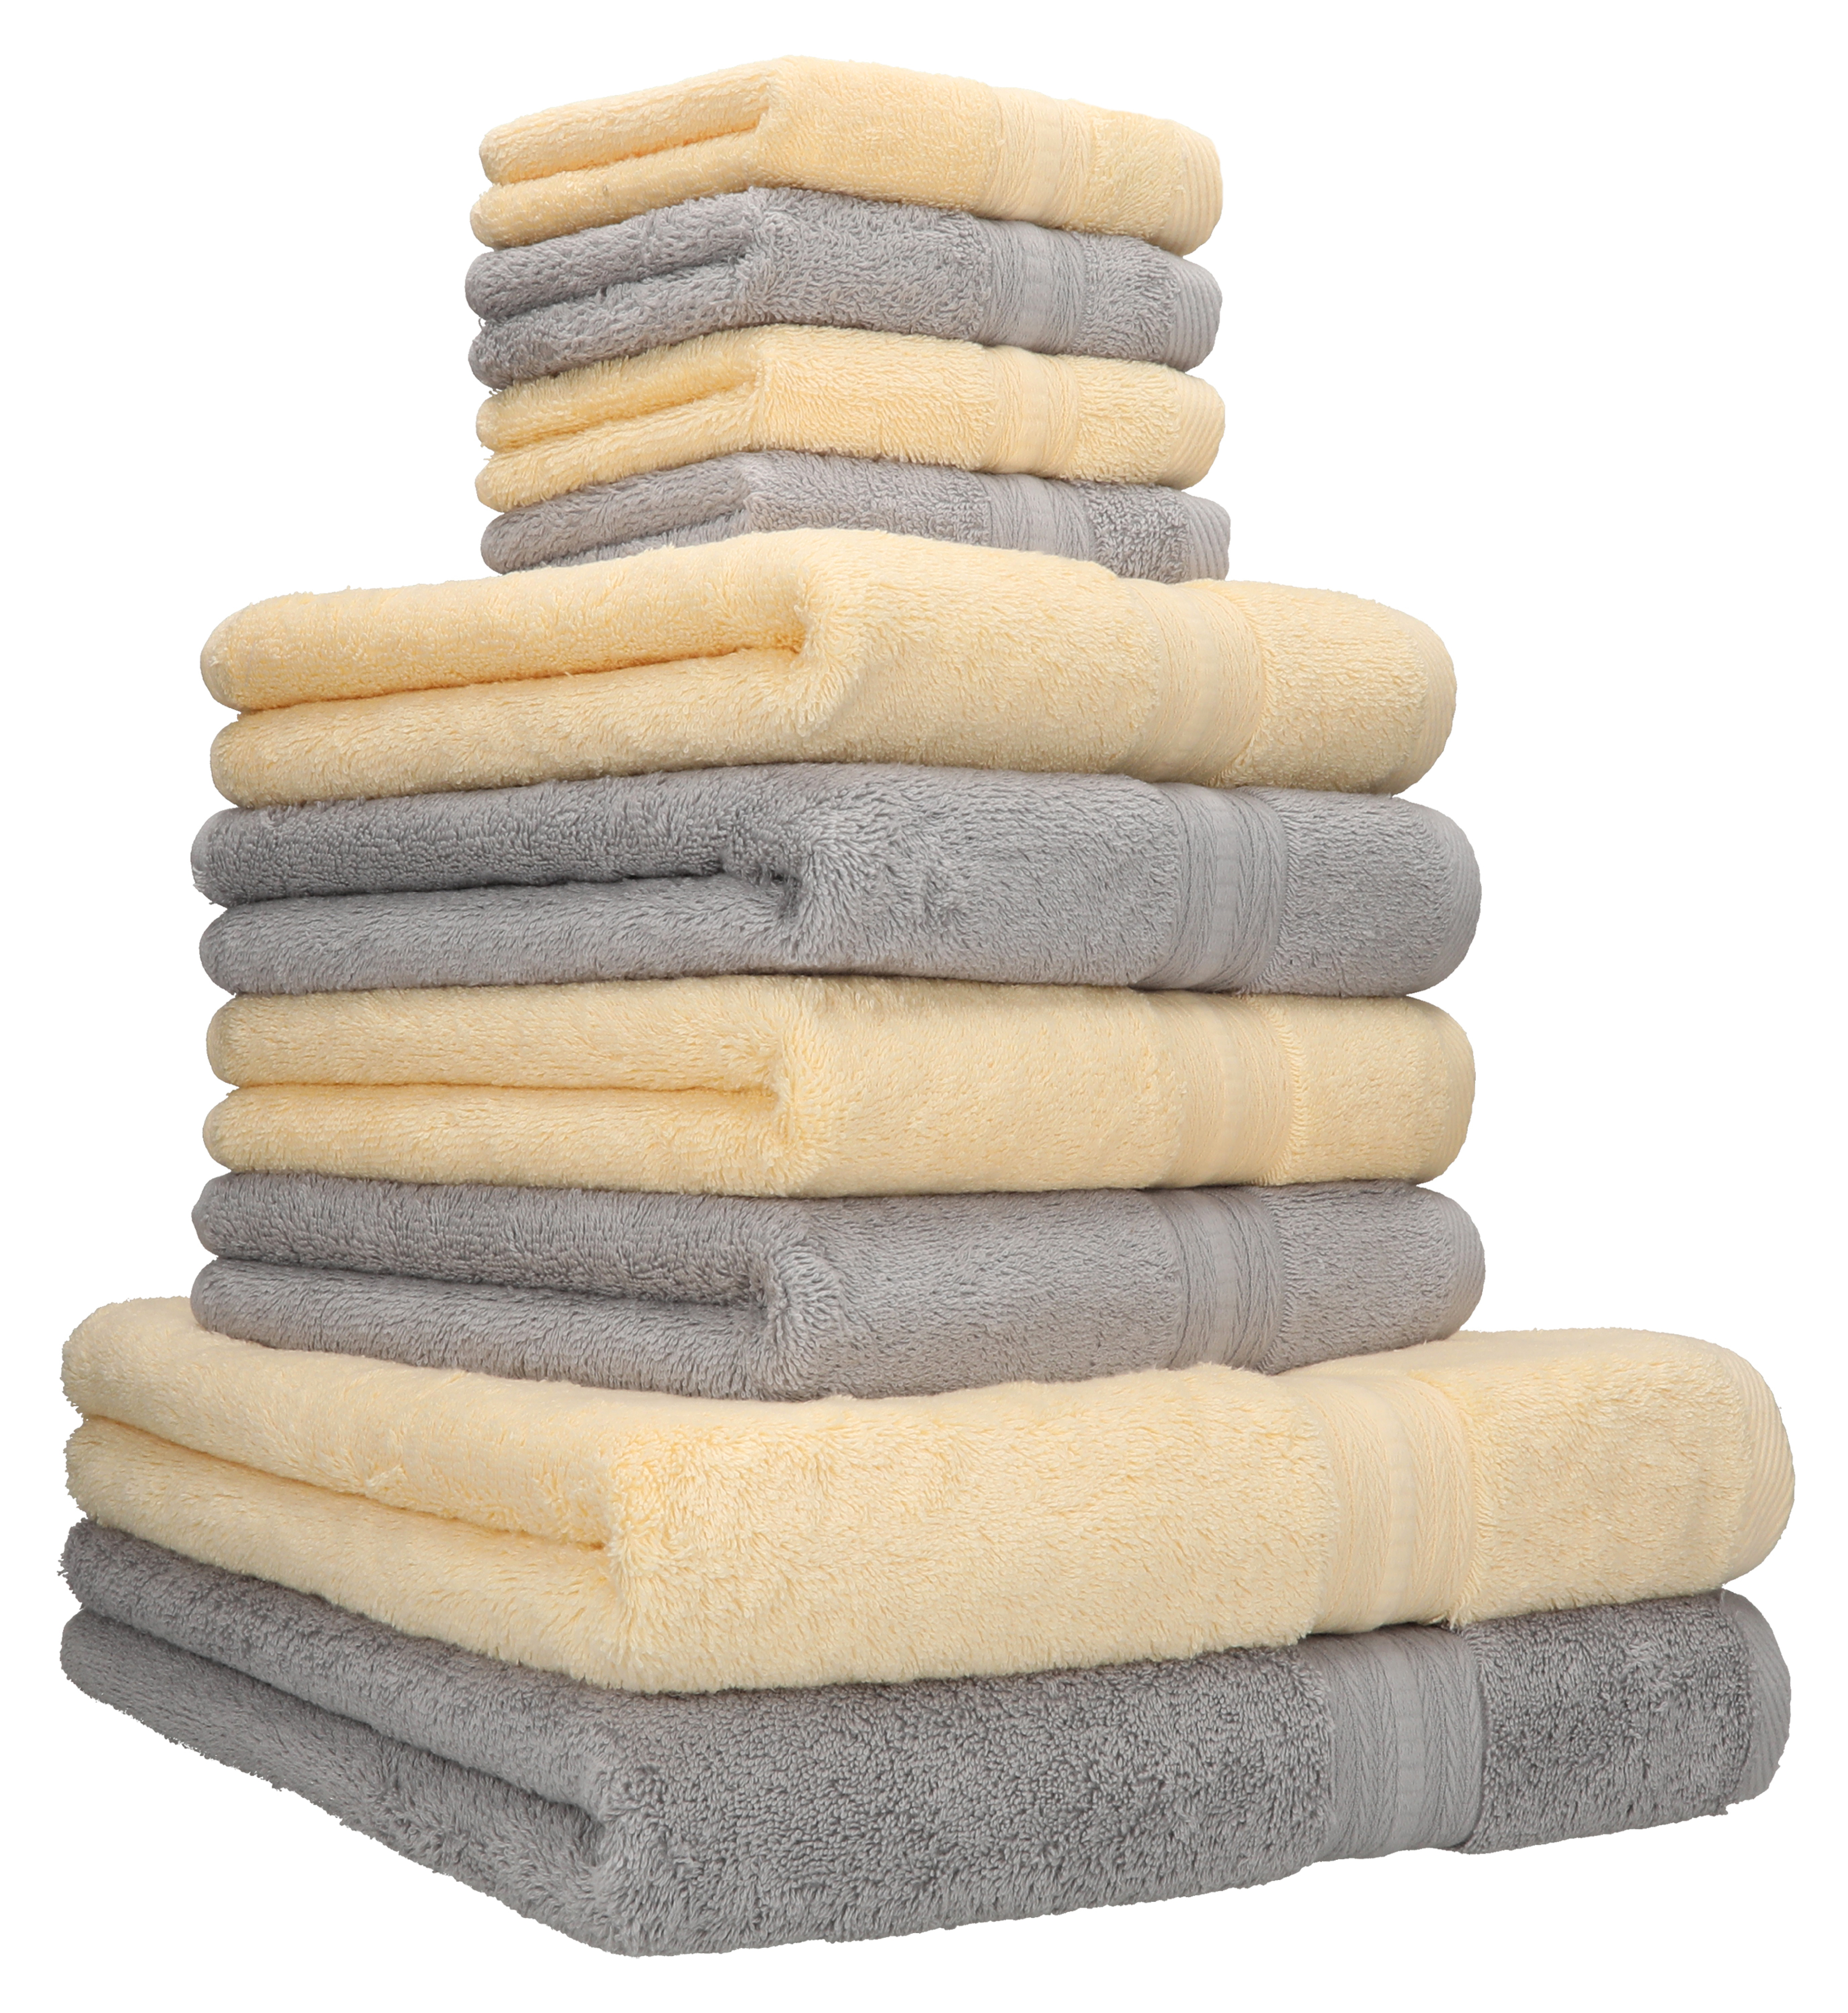 Betz 10-tlg. Handtuch-Set Luxus Baumwolle 4 Duschtücher 100% GOLD 2 600g/m² Qualität